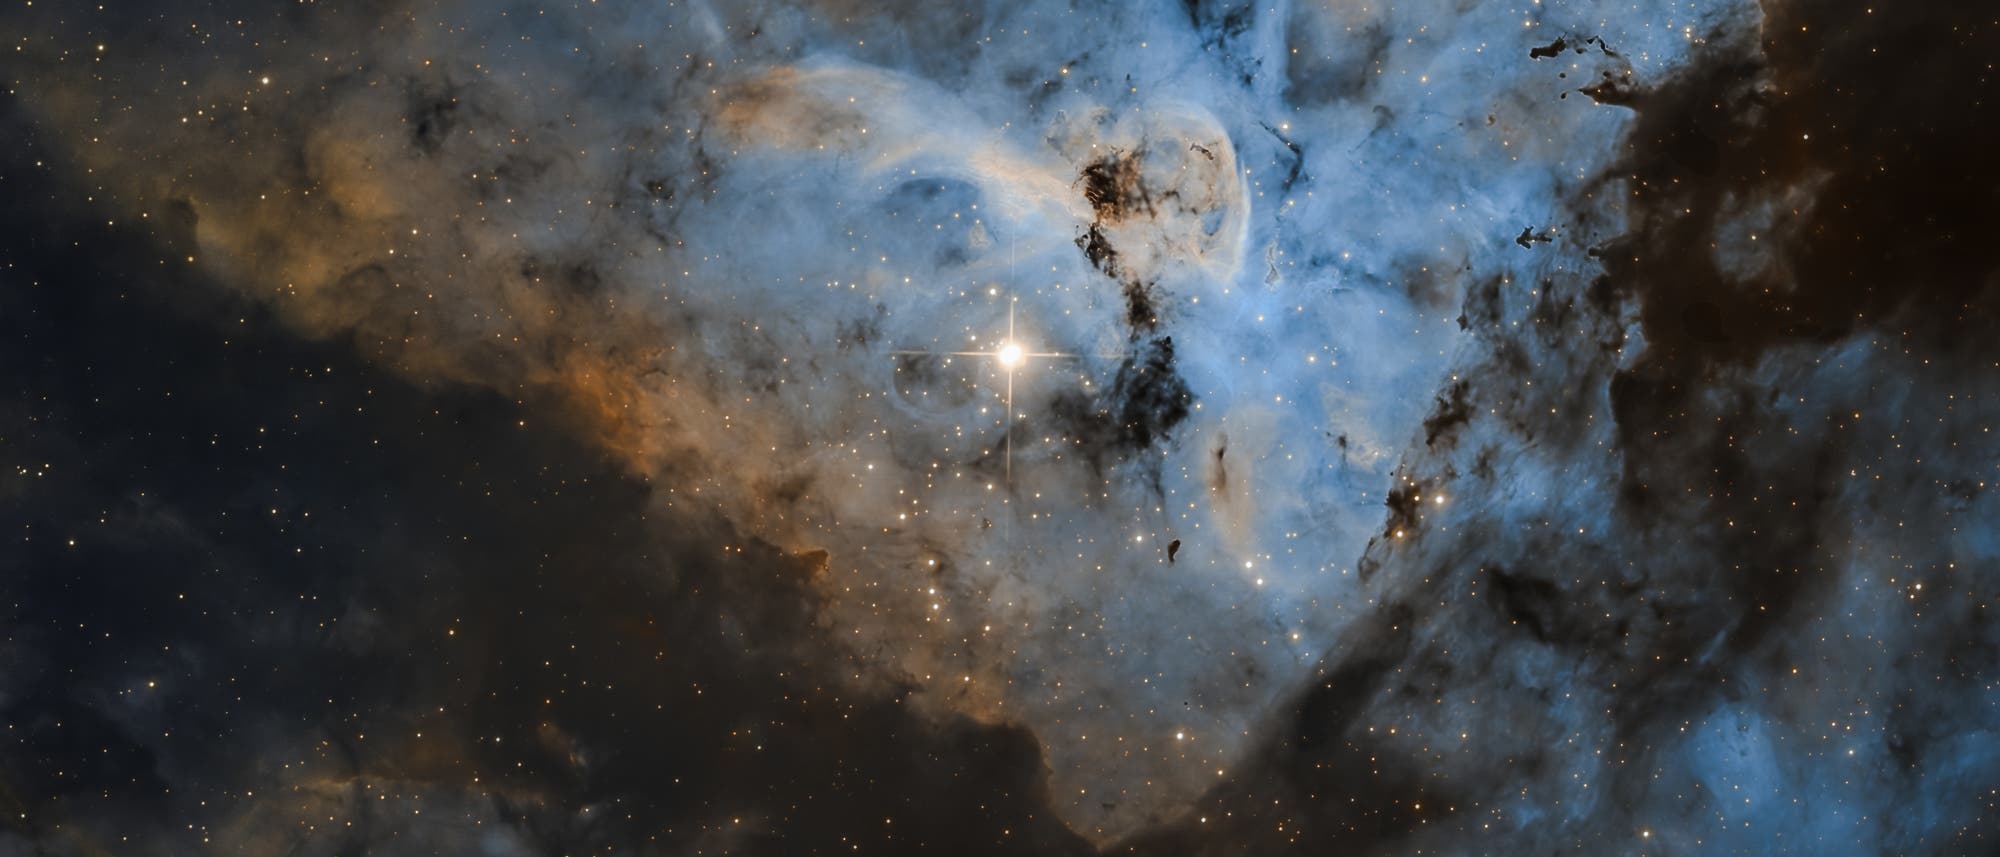 Eta Carinae and the Keyhole